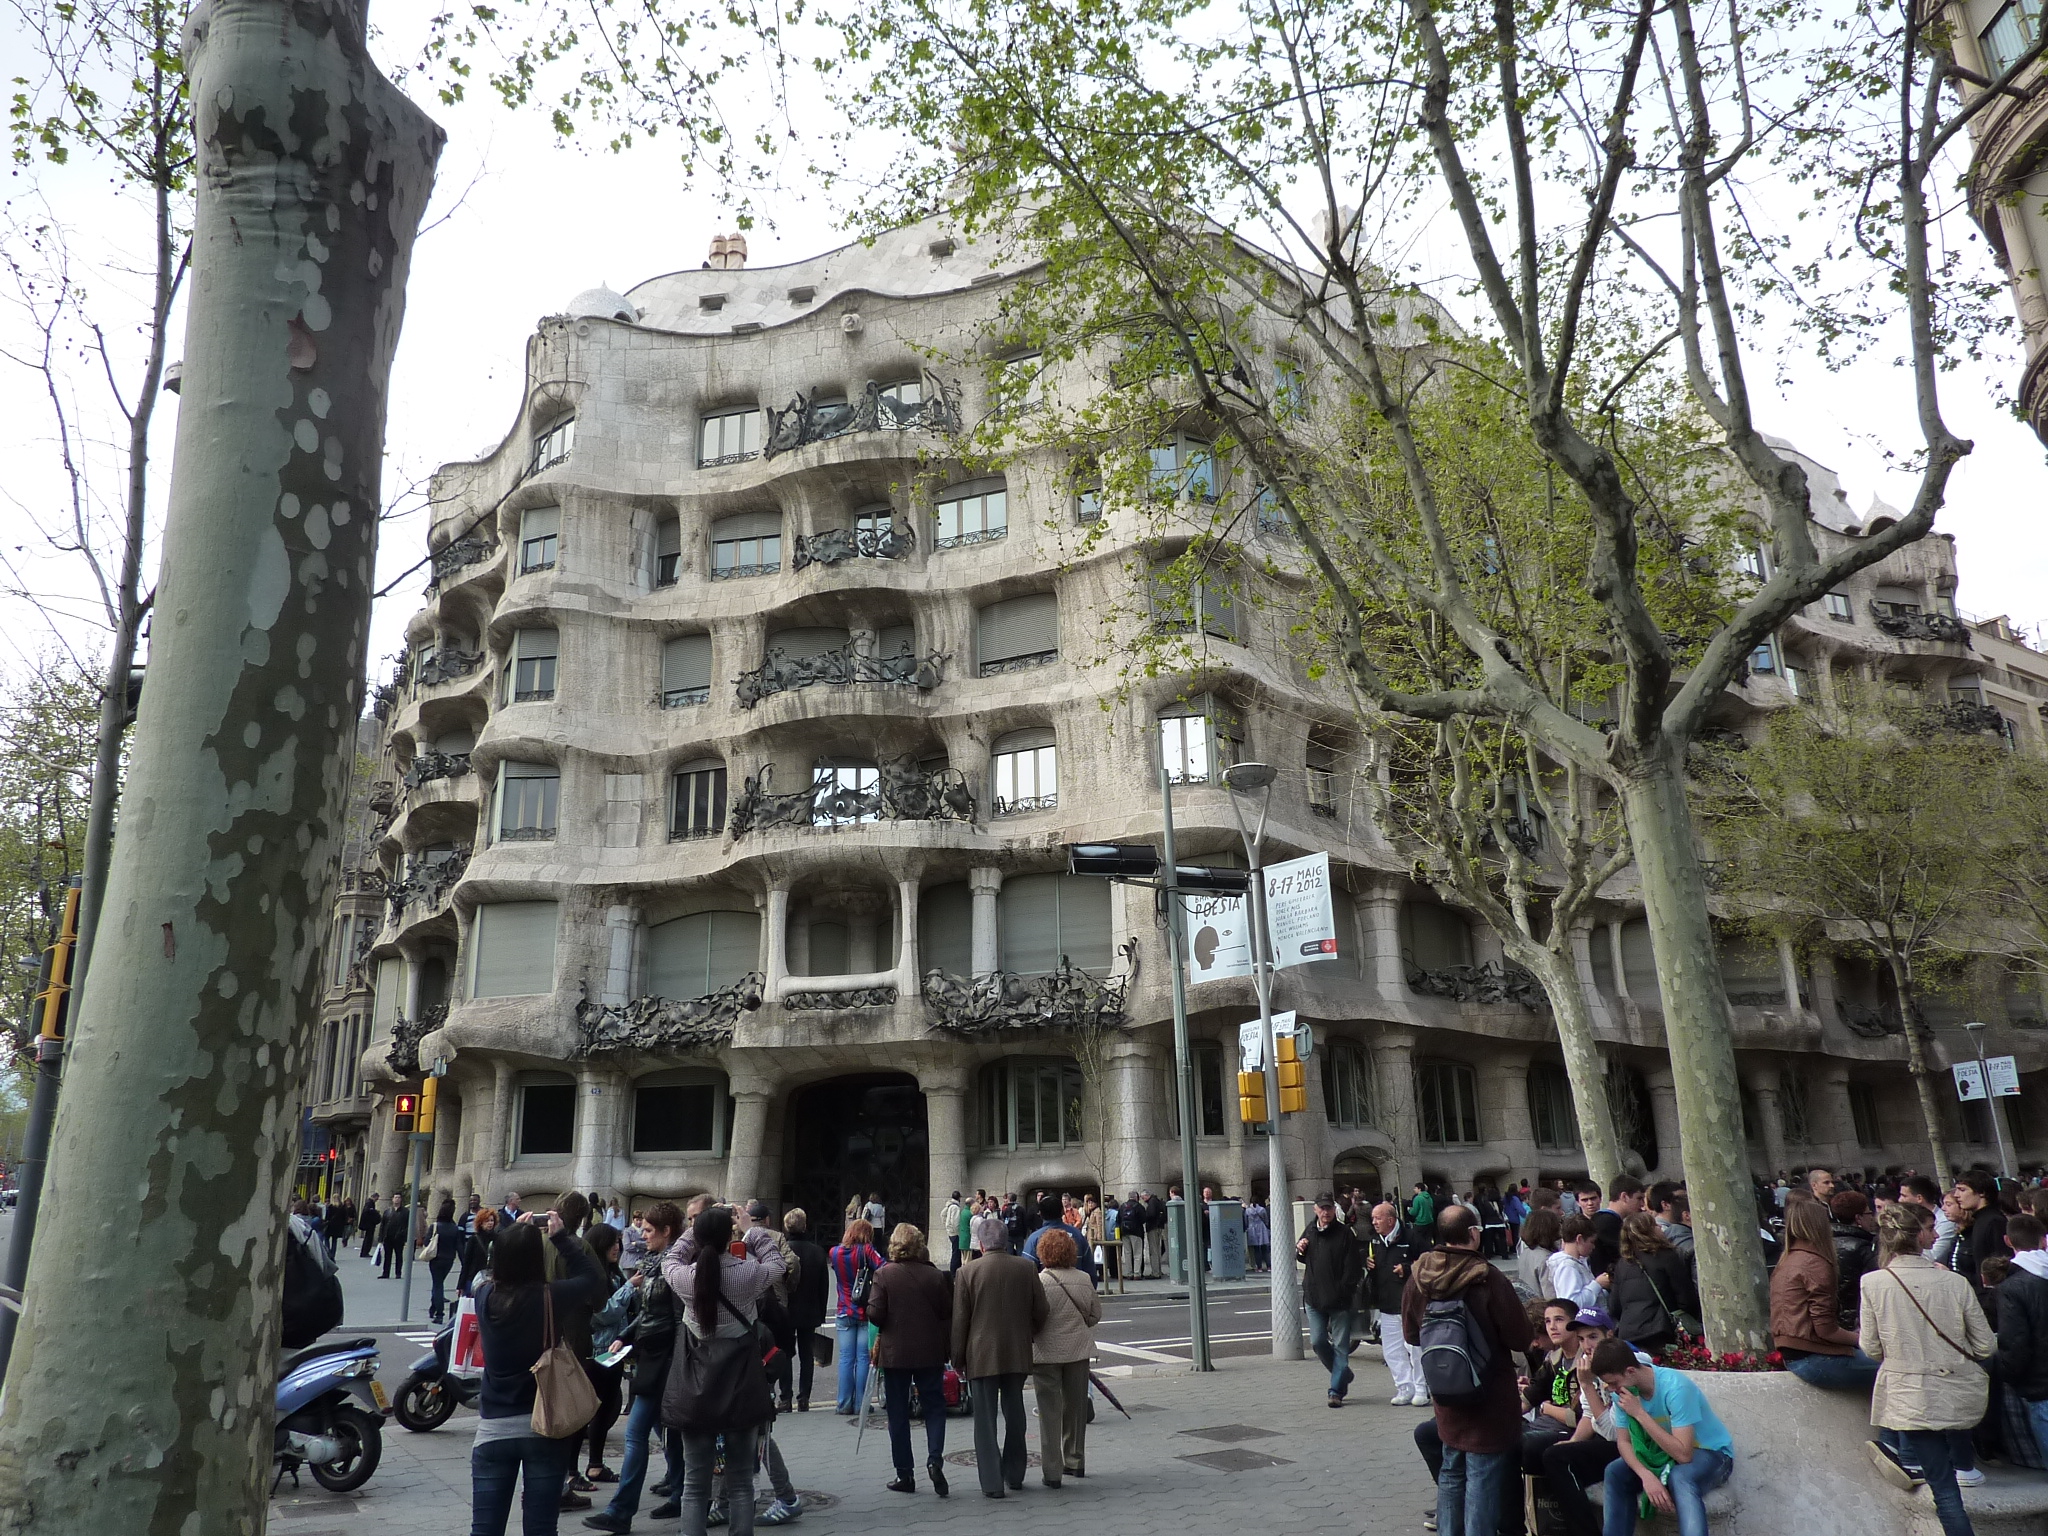 Gaudi's Pedrera